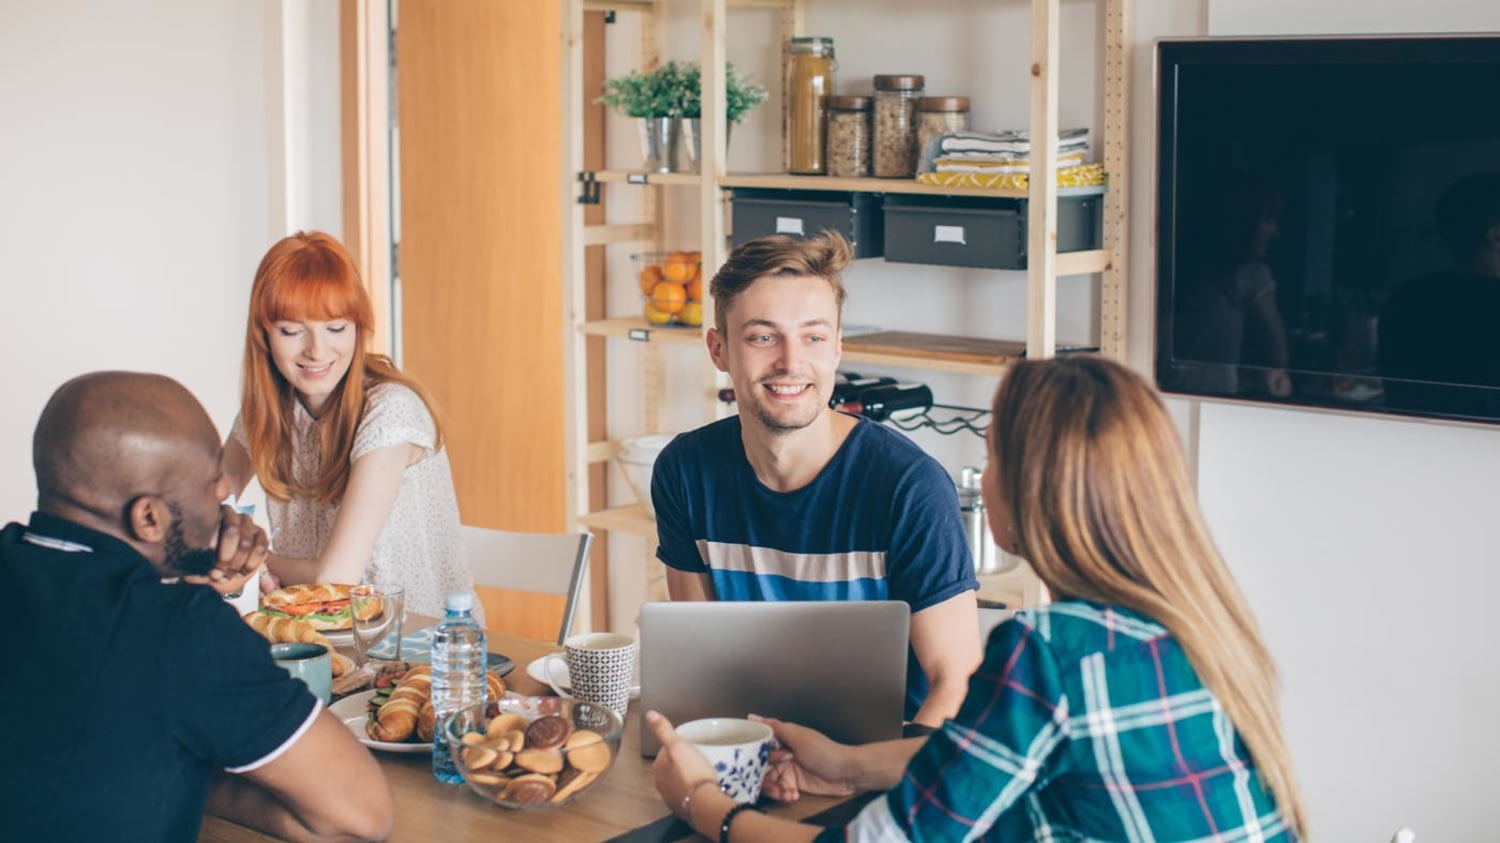 Vier junge Menschen frühstücken miteinander in einer Wohnung